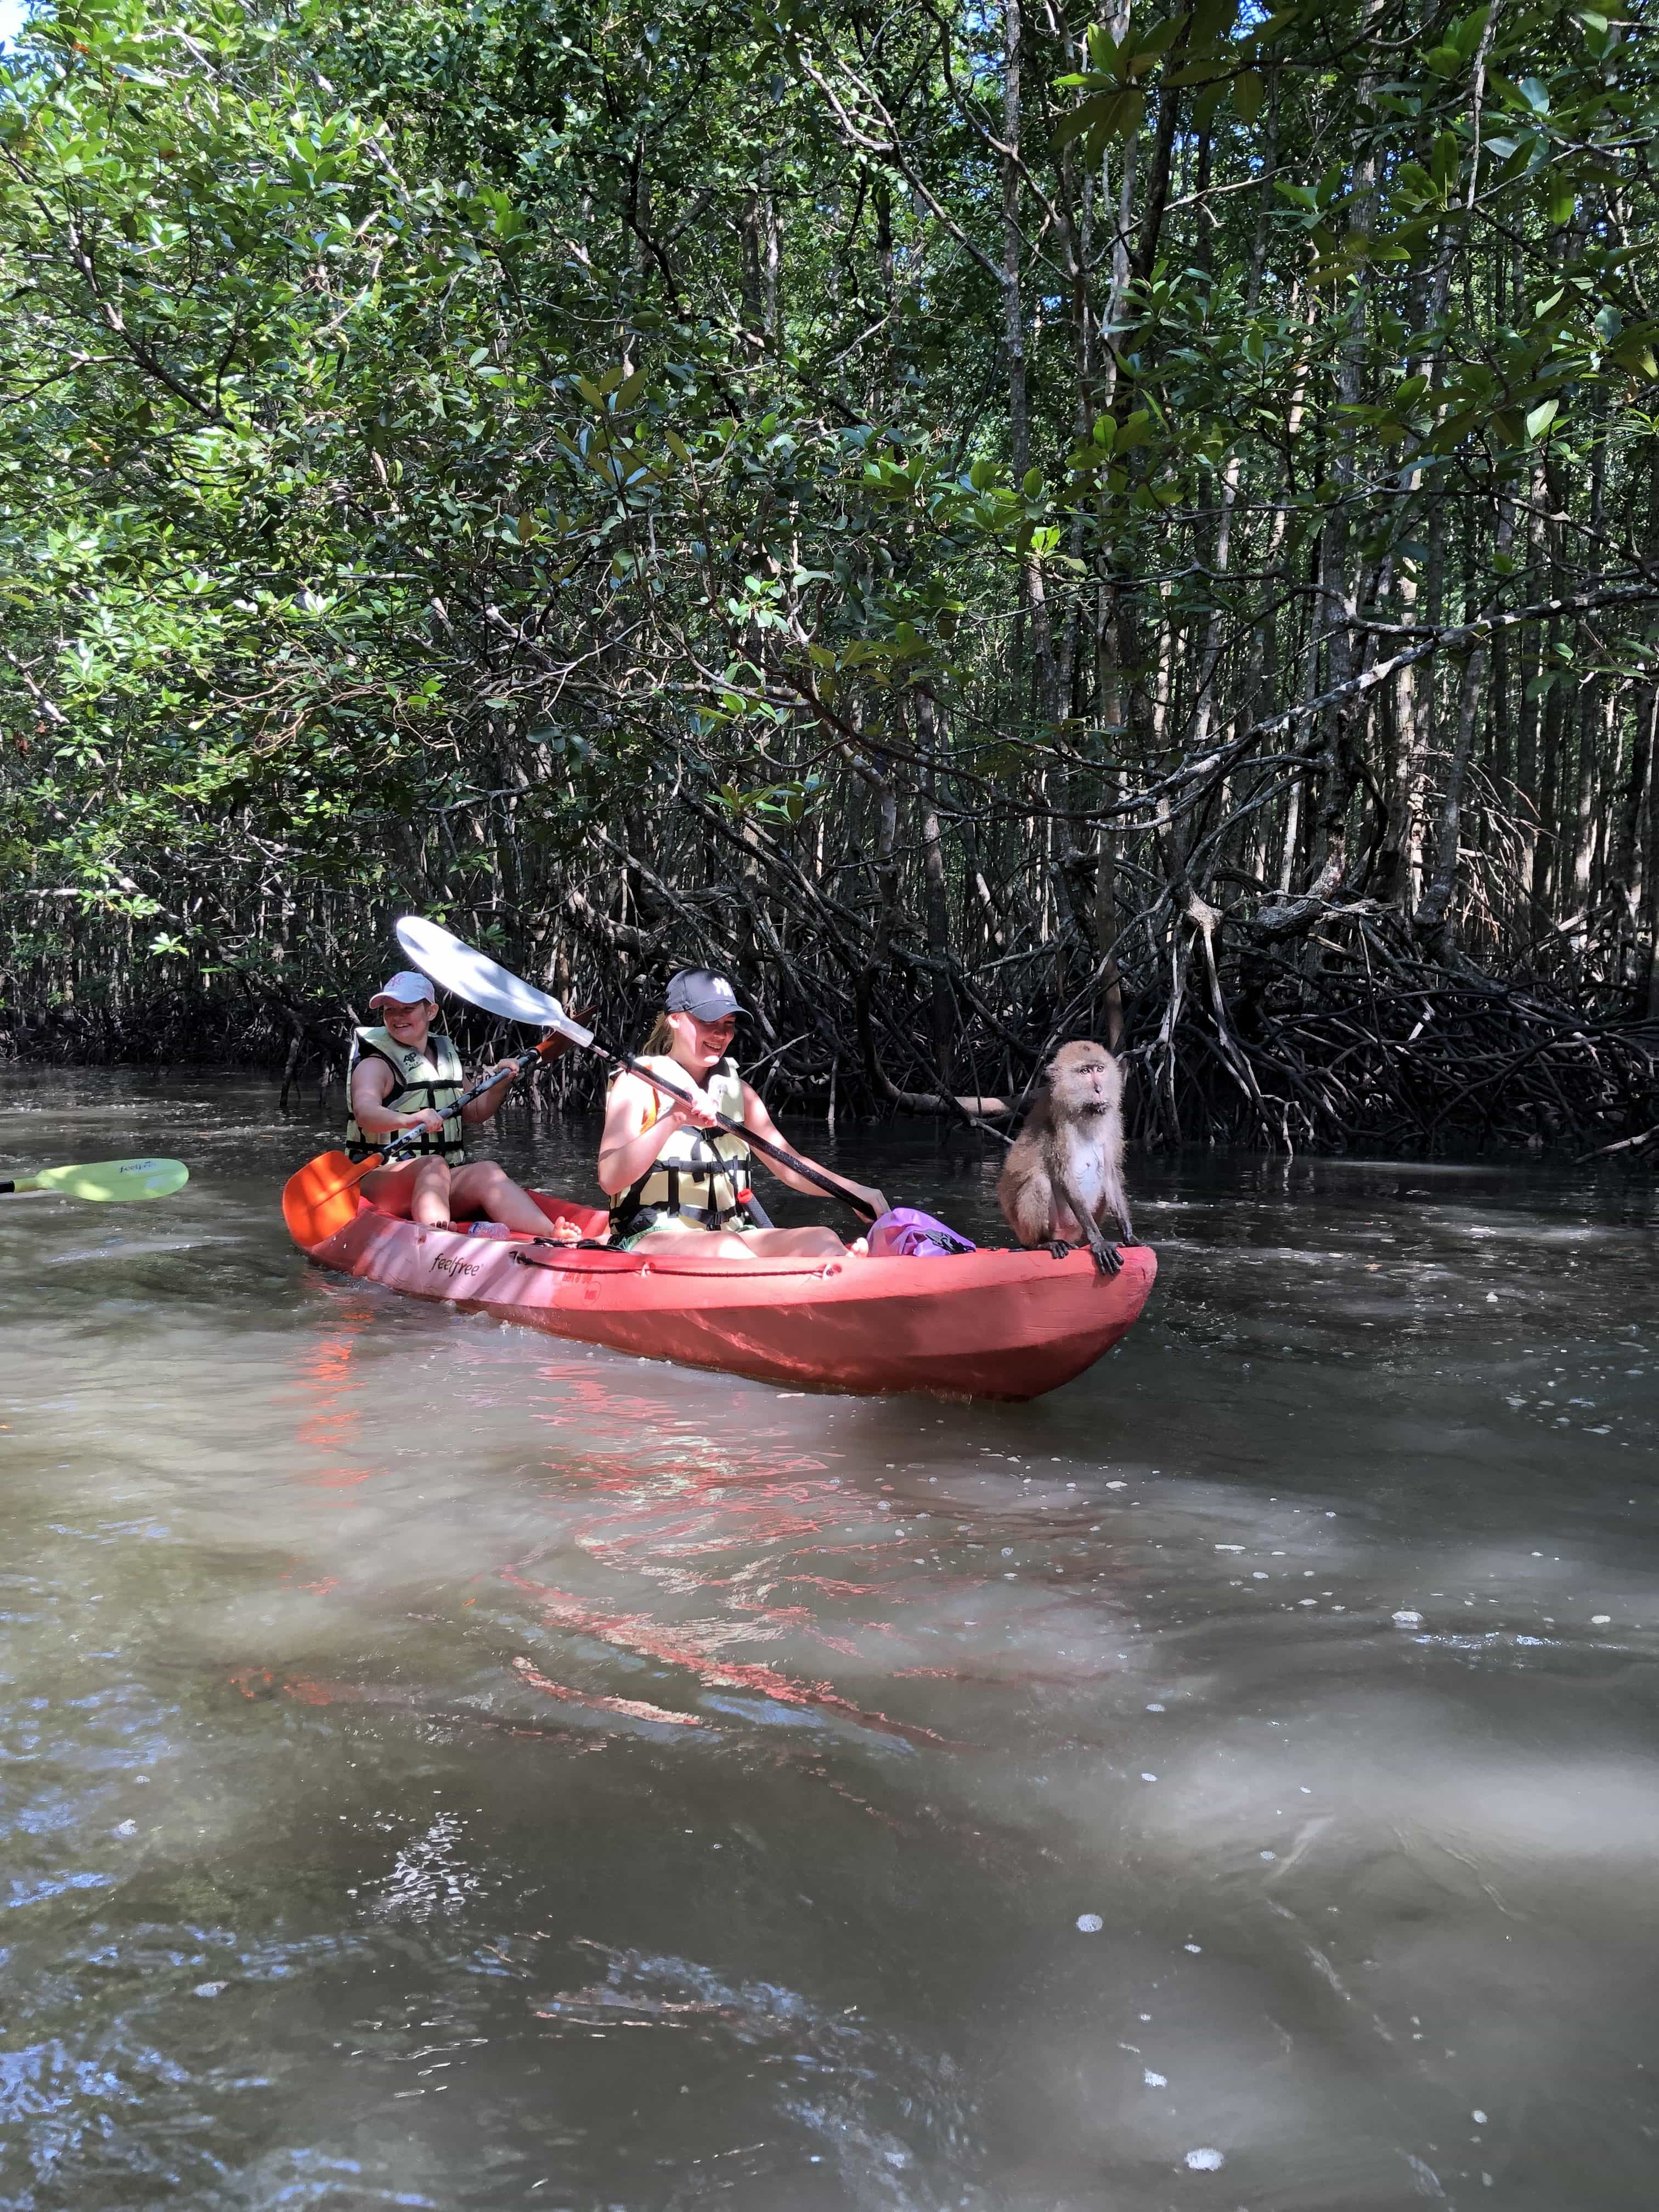 Kayaking through the mangroves